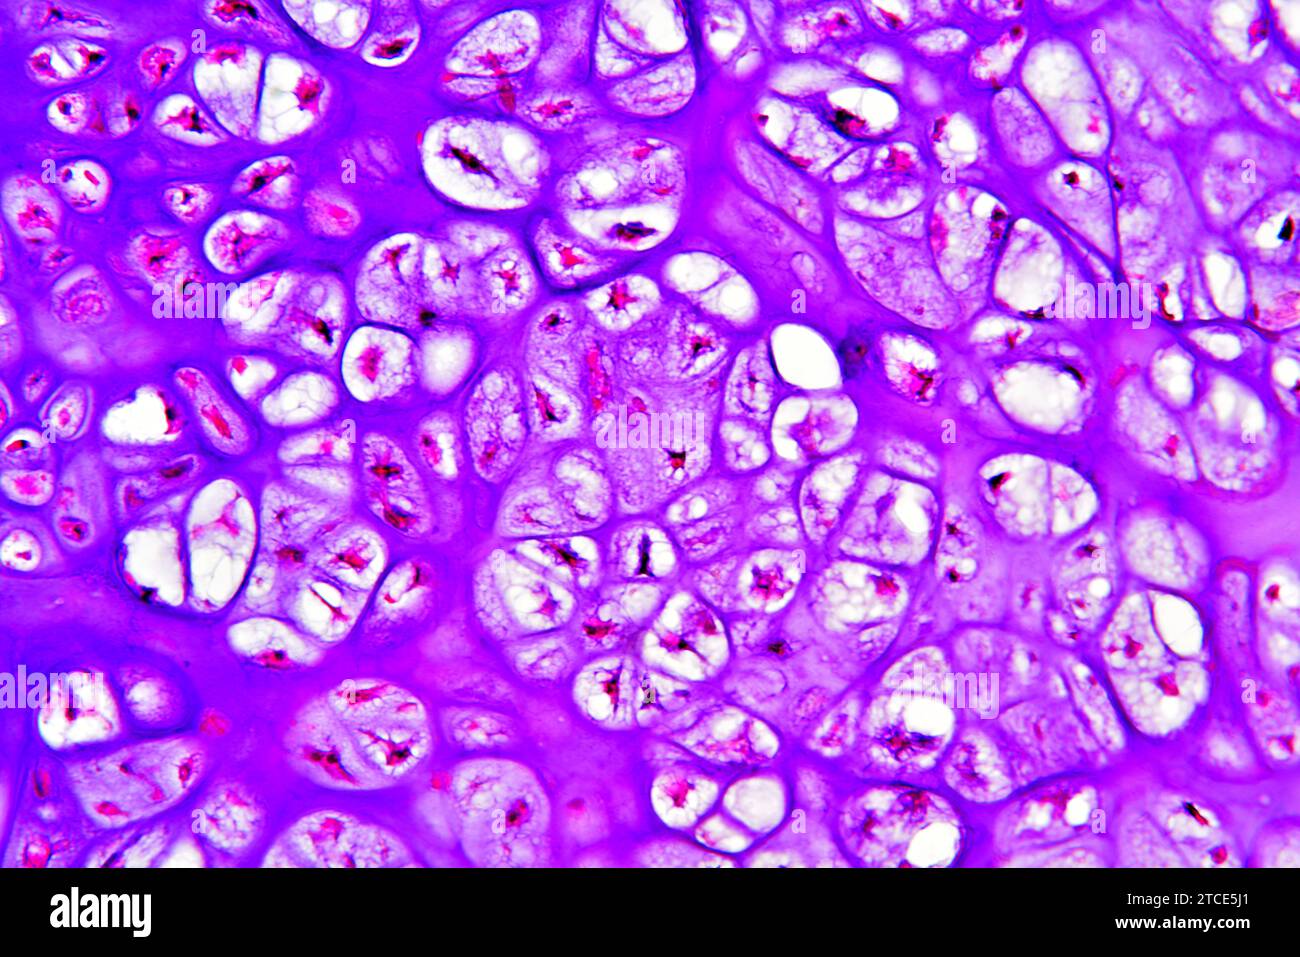 Chondrosoma osseux pubiens humains (tumeur bénigne) montrant des chondrocytes et une matrice. Microscope optique X200. Banque D'Images